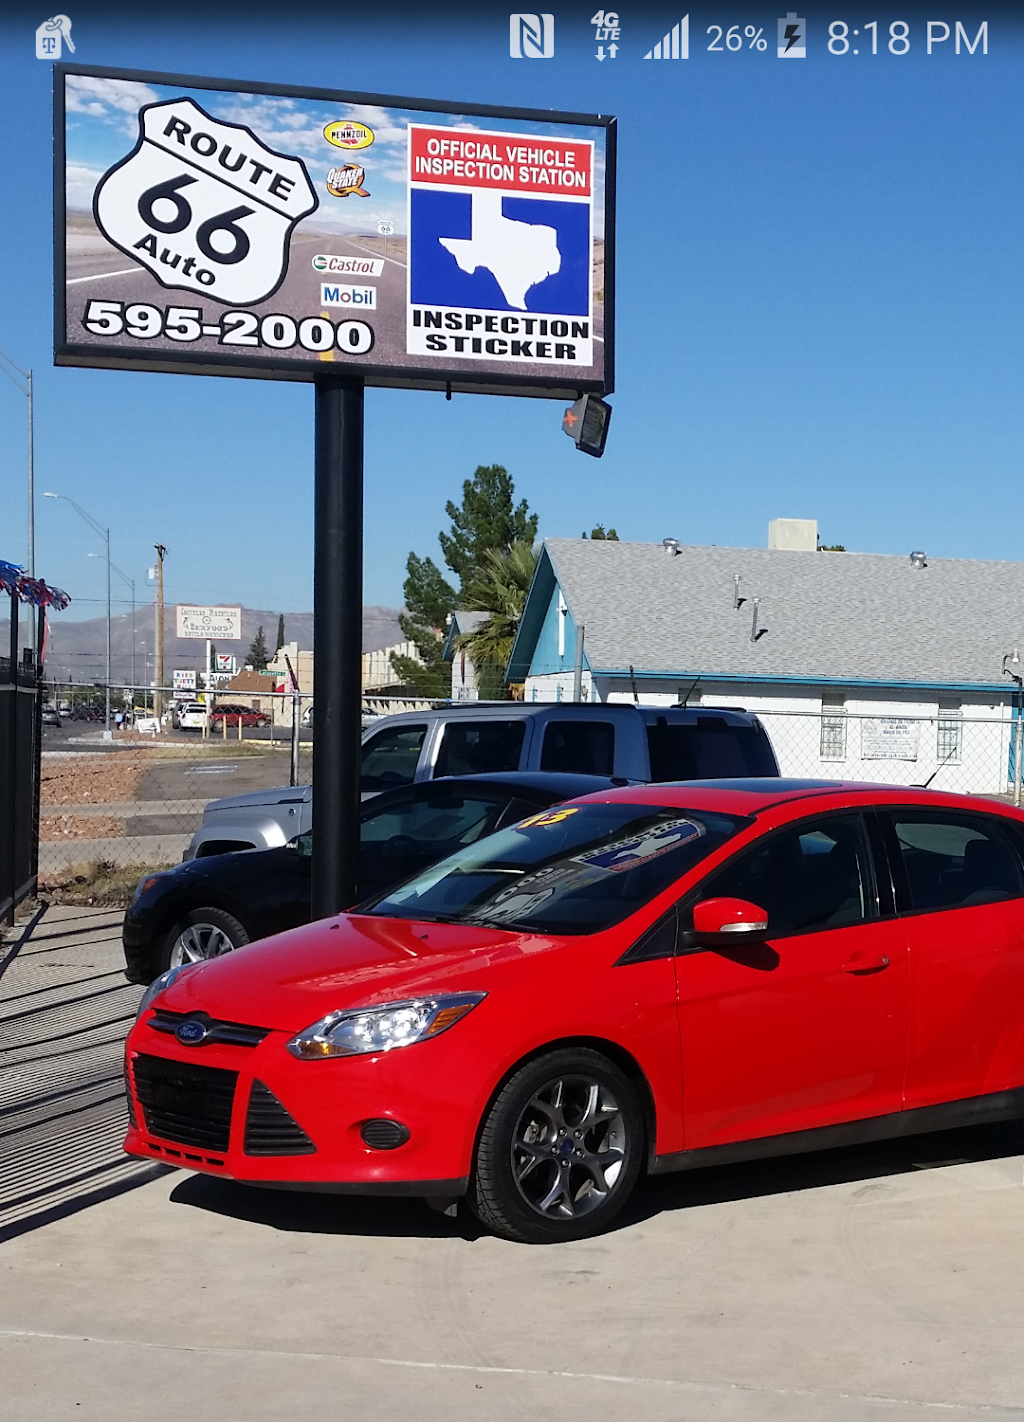 Route 66 Auto | 8021 N Loop Dr, El Paso, TX 79915, USA | Phone: (915) 595-2000